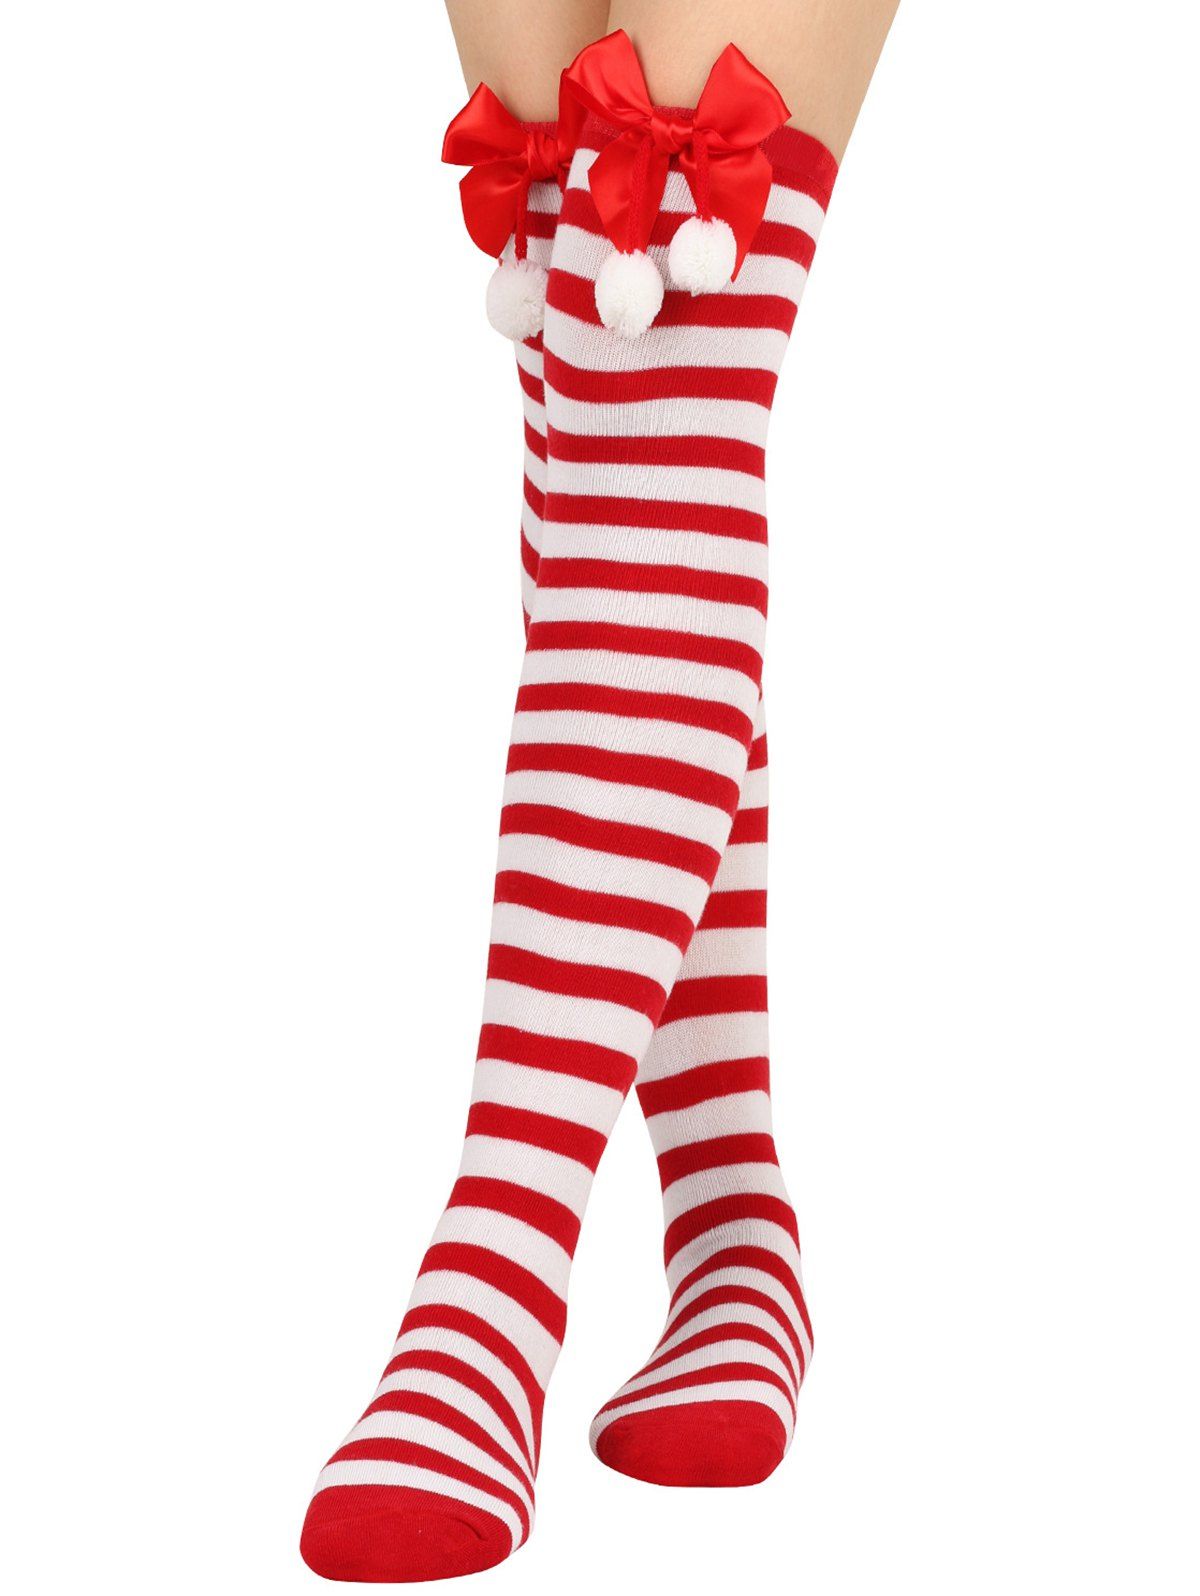 Chaussettes de Noël Hautes Rayées Nouées Imprimées - Rouge 1 PAIR